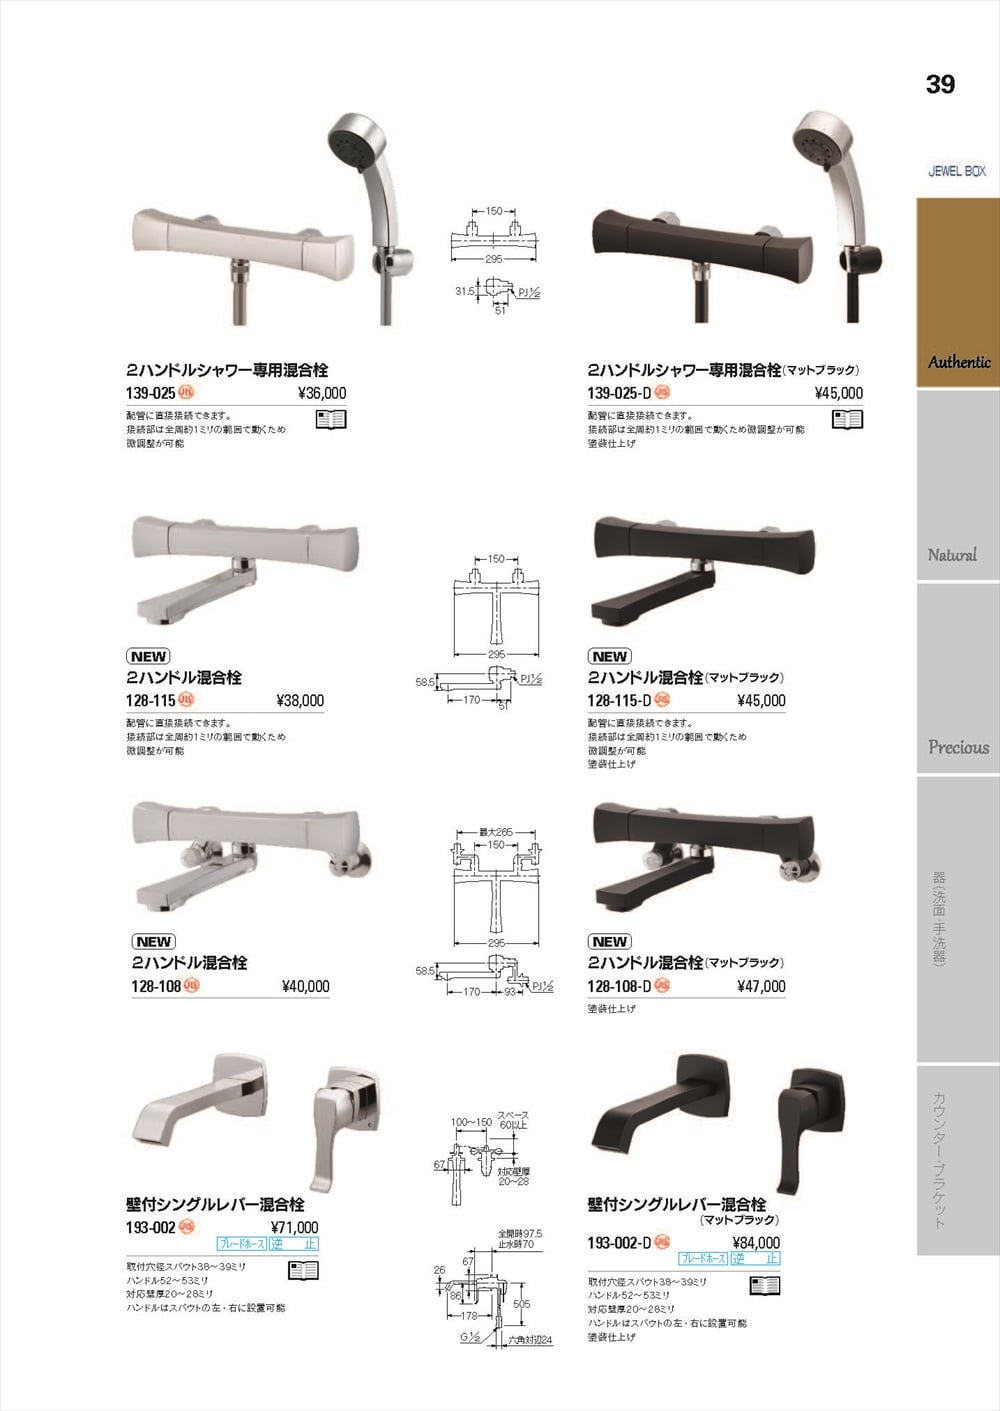 高価値 KAKUDAI 神楽 2ハンドルシャワー専用混合栓 マットブラック 139-024-D 水栓 カクダイ